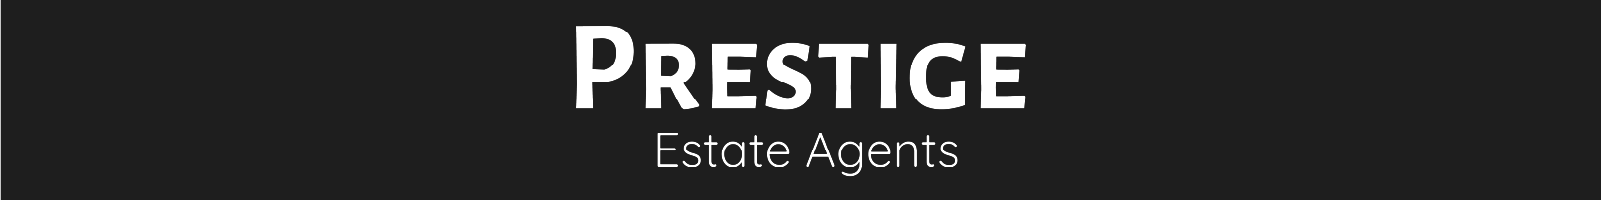 Prestige Estate Agents